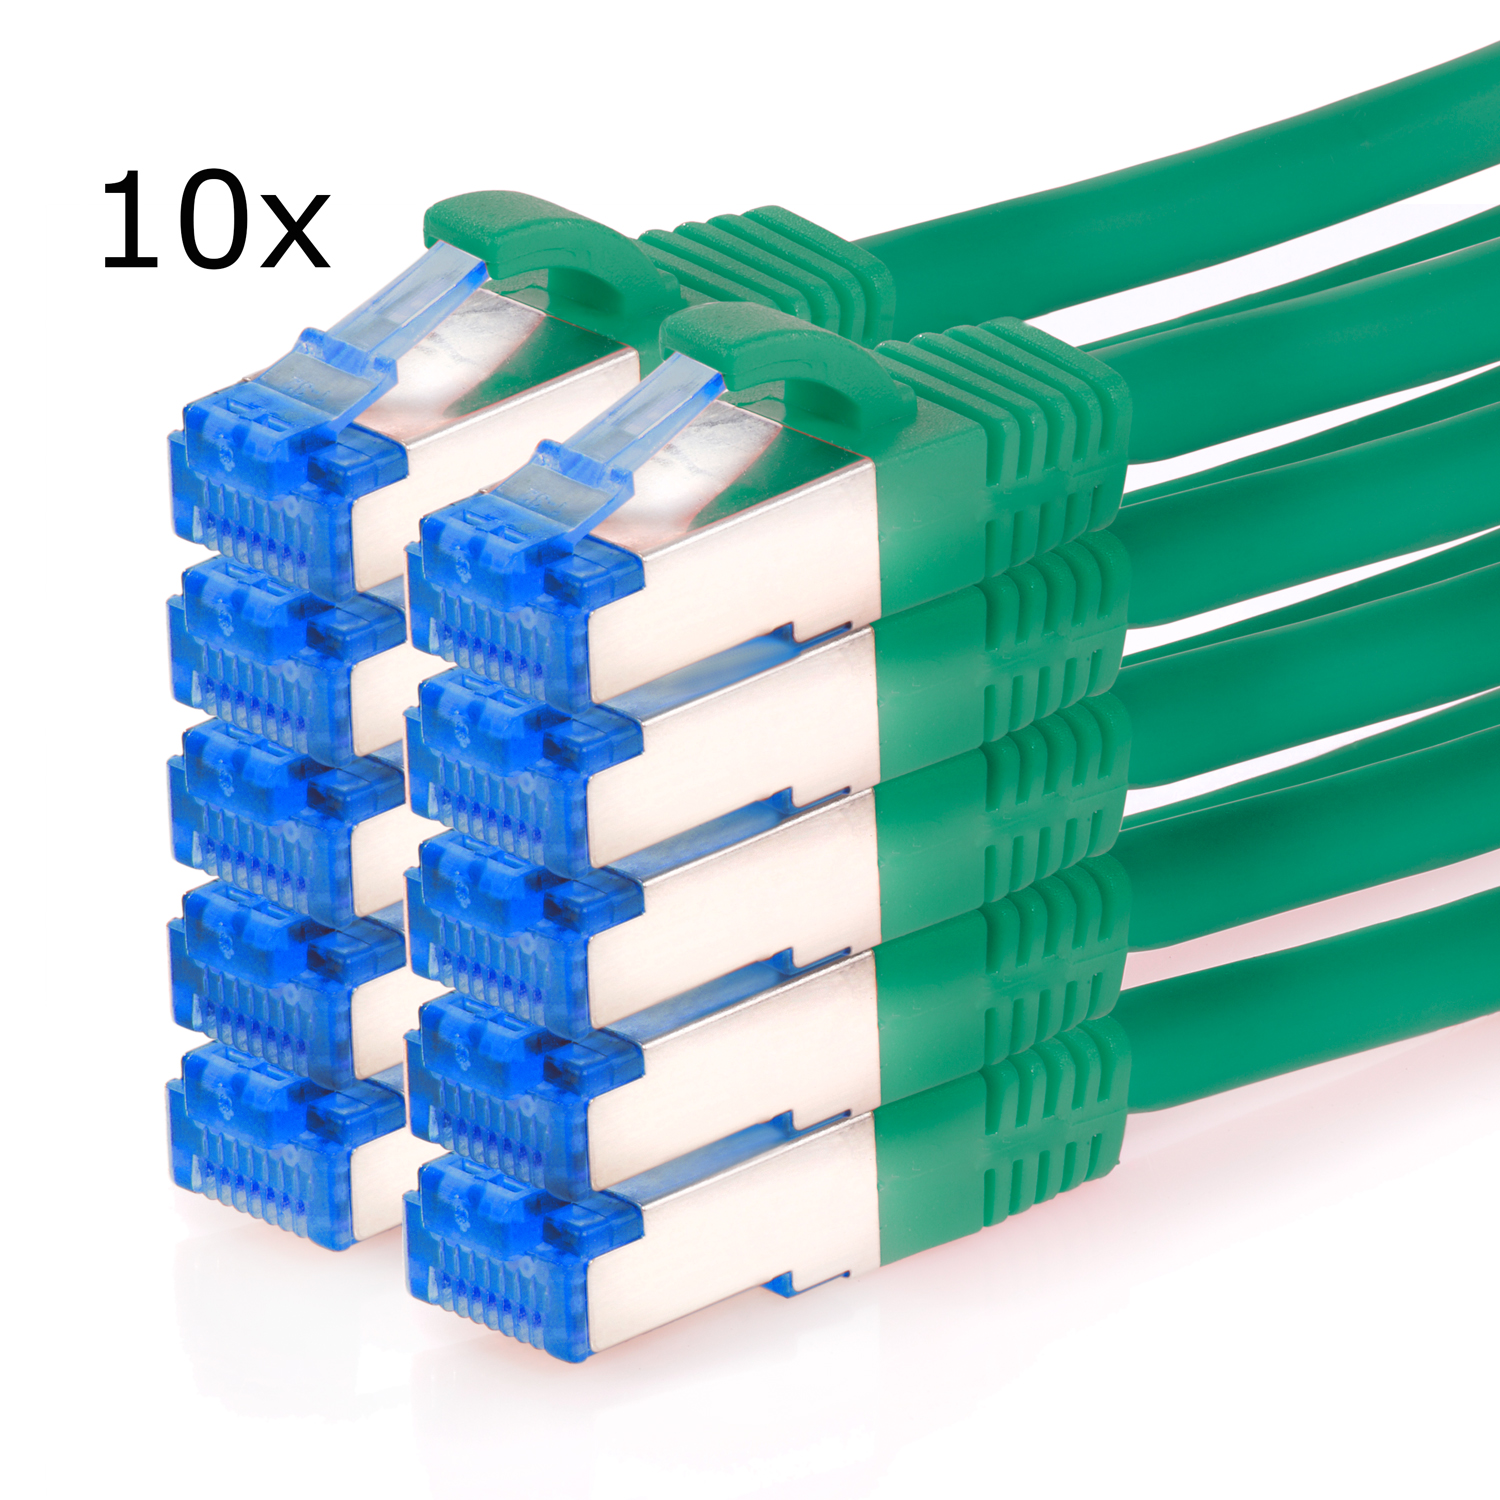 TPFNET 10er Pack Patchkabel Netzwerkkabel, 3m 10GBit, m S/FTP Netzwerkkabel grün, 3 